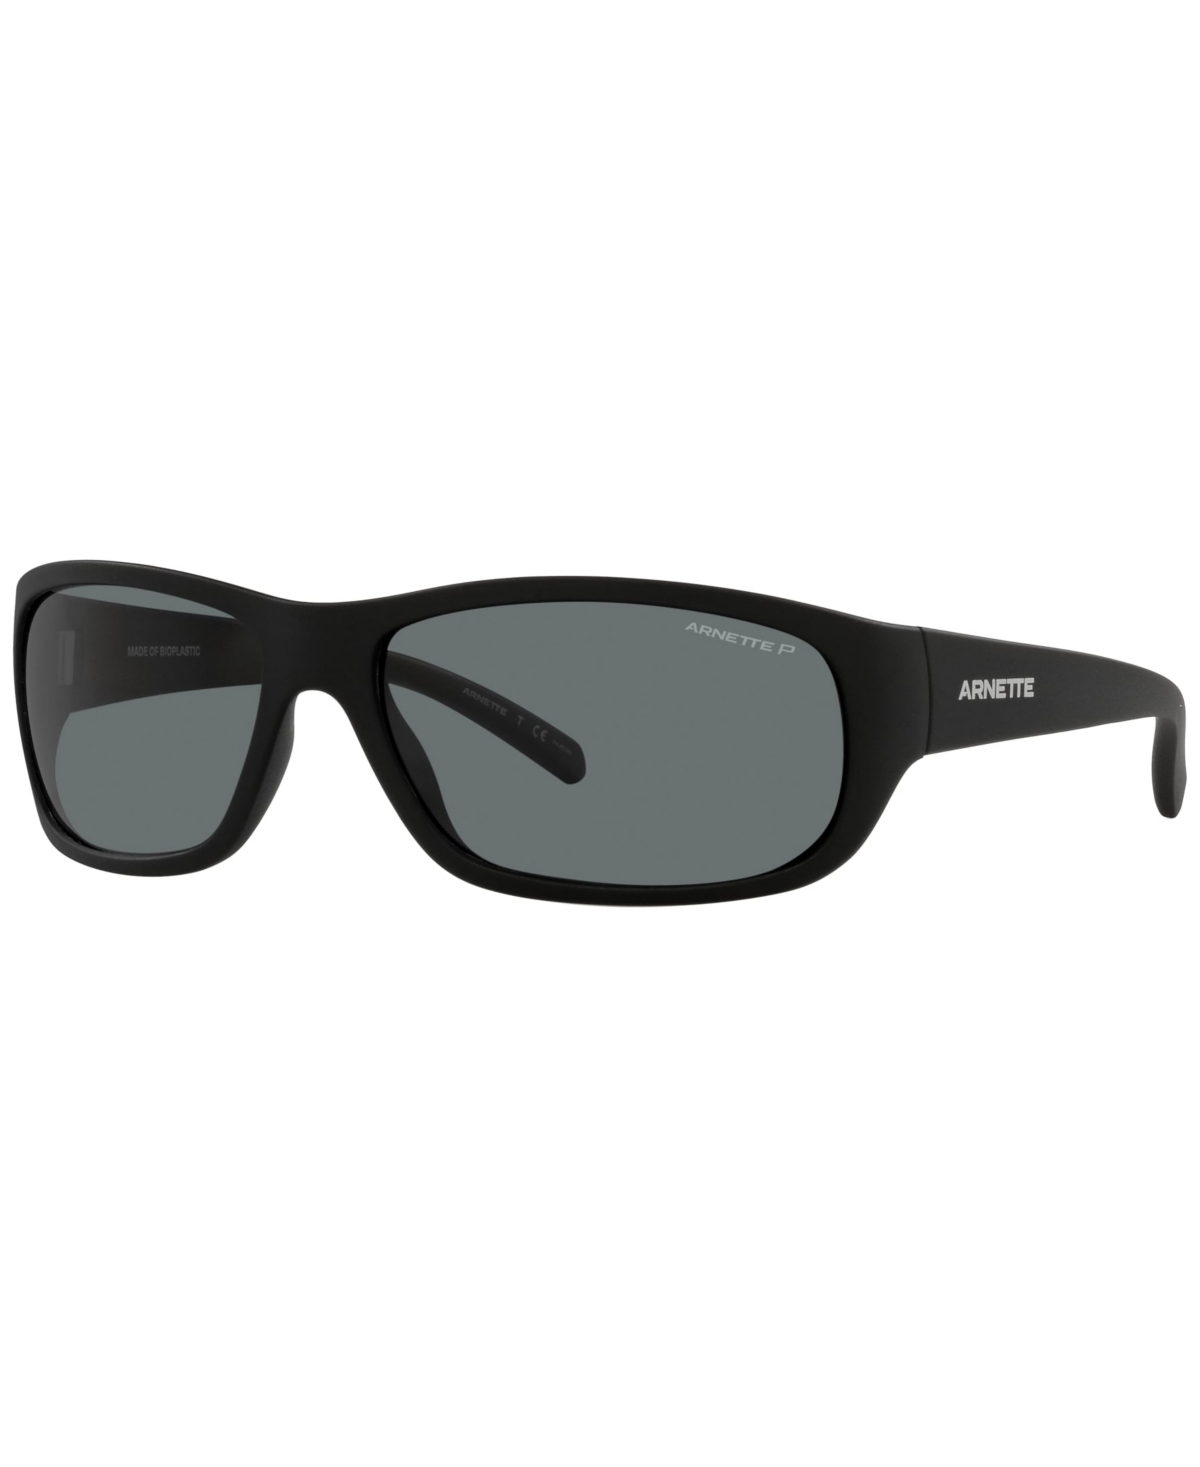 Unisex Polarized Sunglasses, AN4290 Uka-Uka 63 - Matte Black